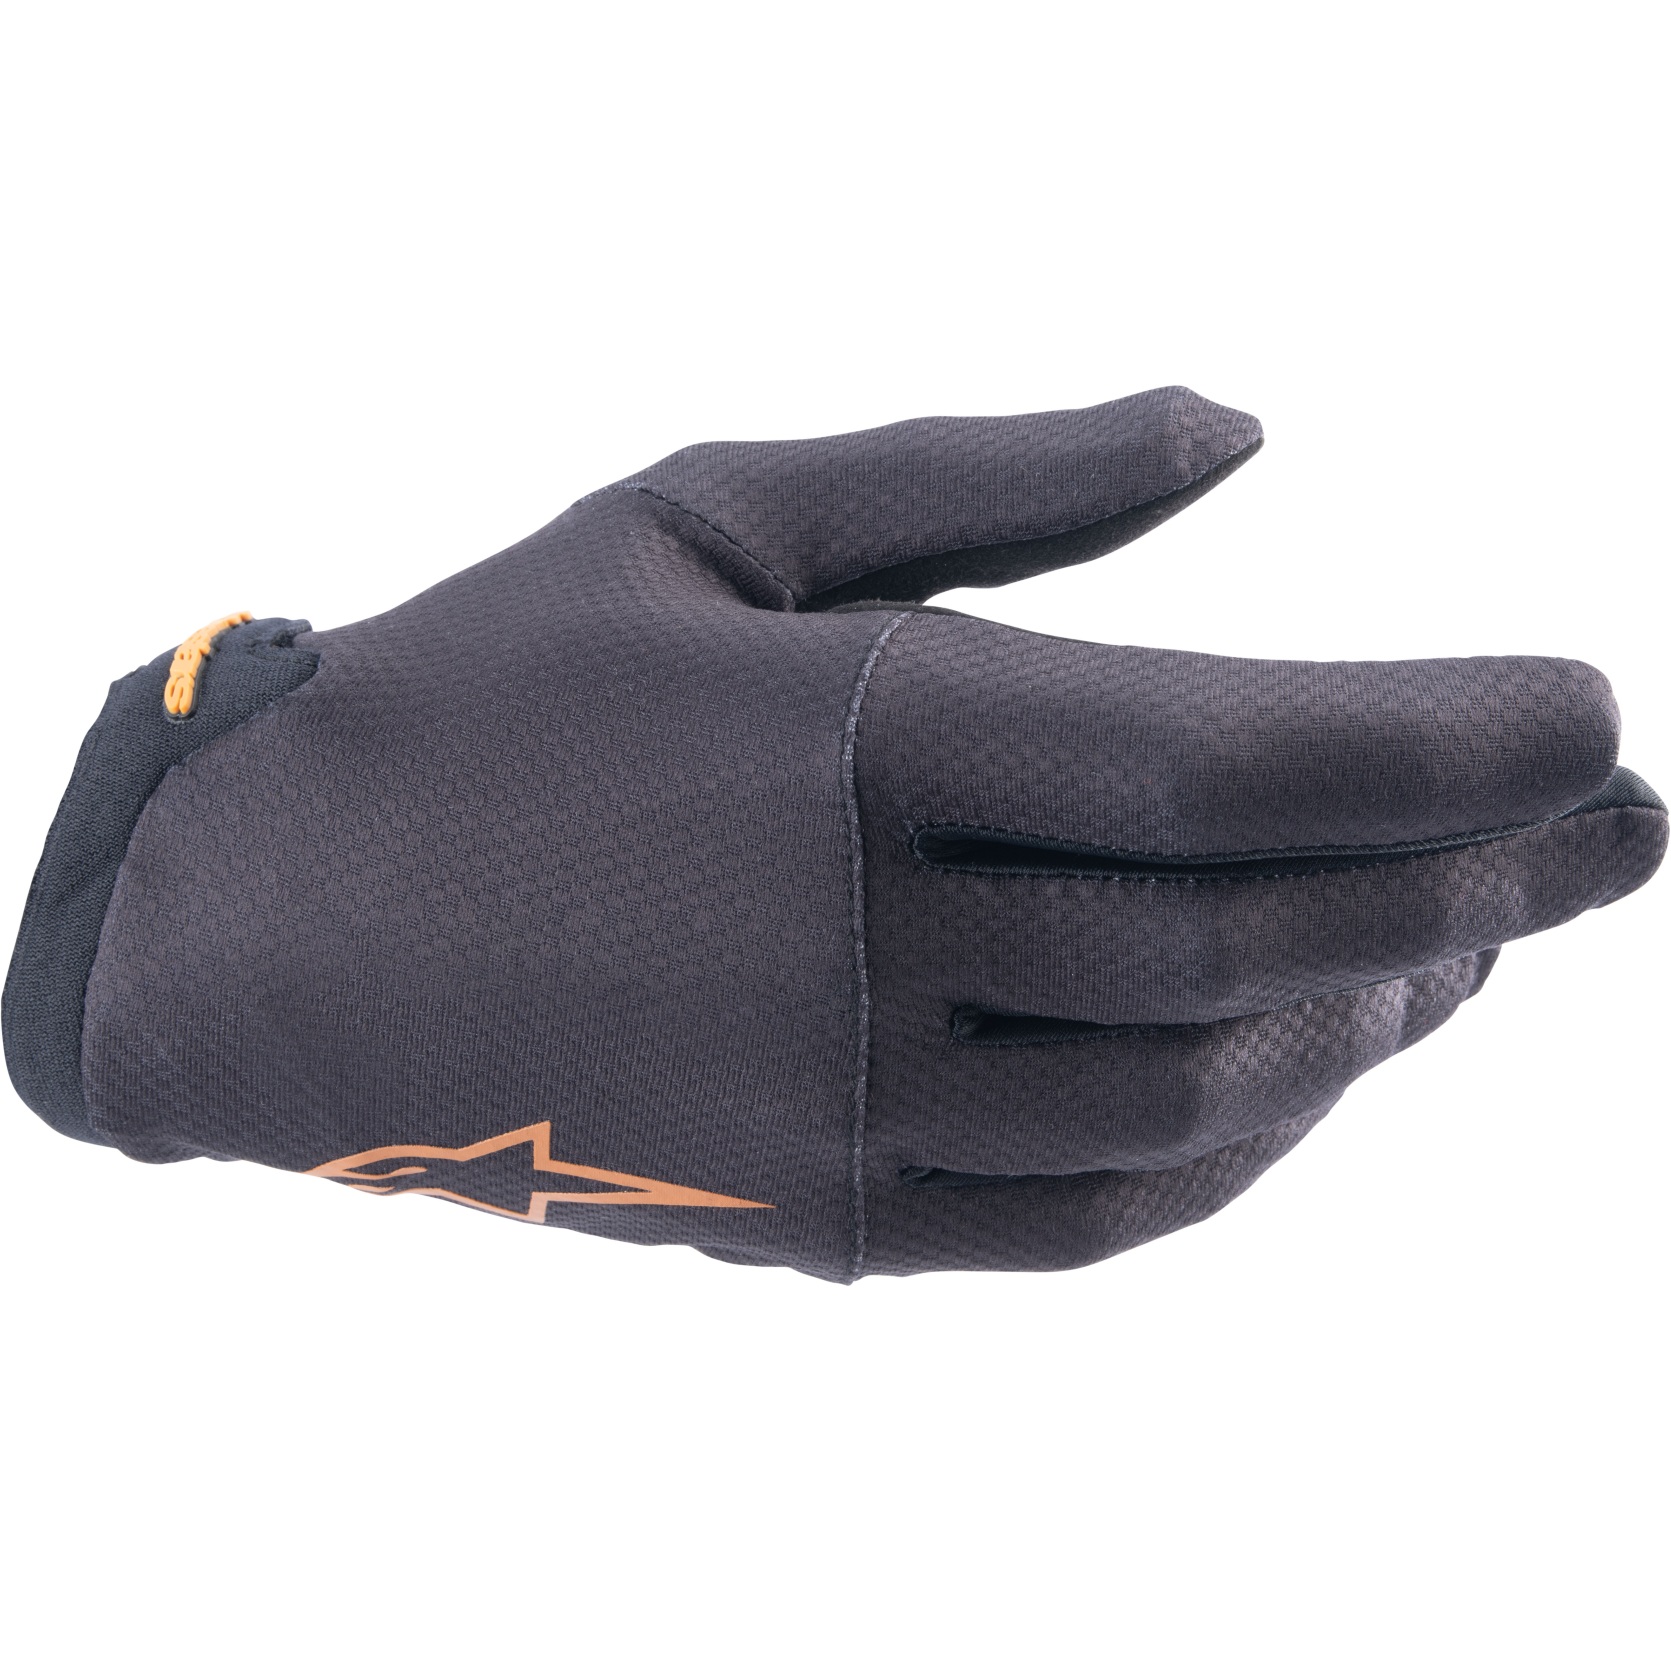 Produktbild von Alpinestars A-Aria Handschuhe - black dark gold